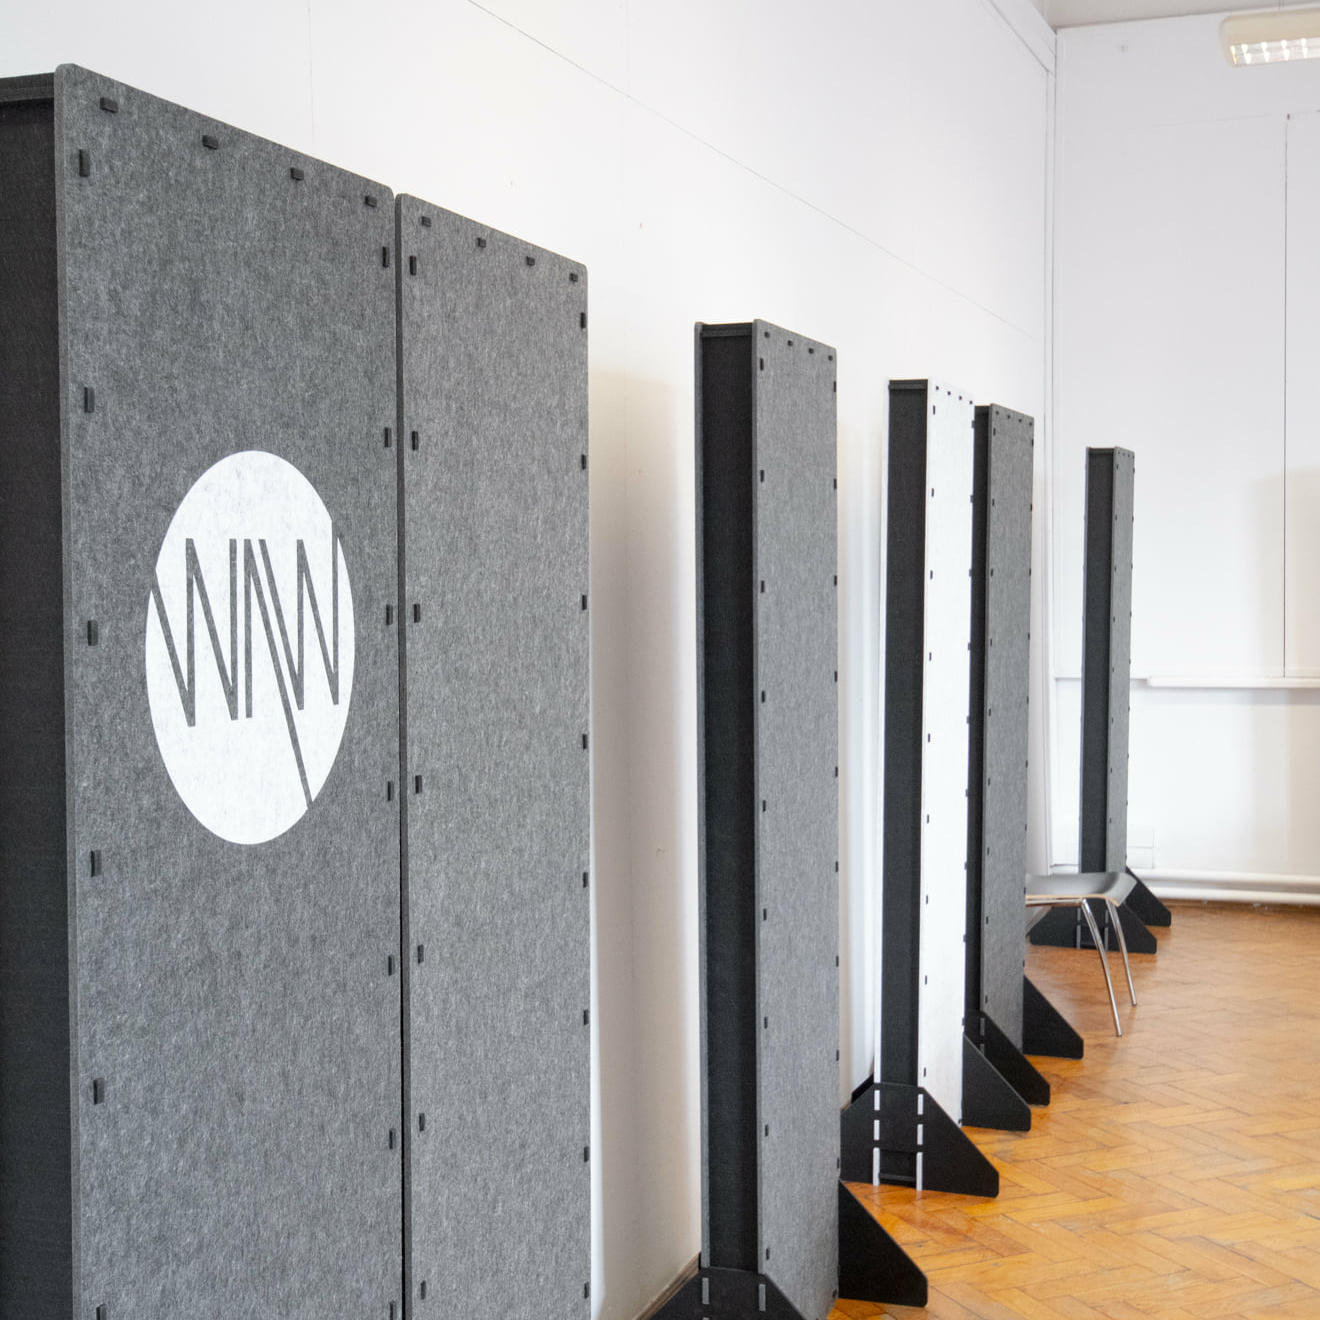 Przegrody akustyczne dźwiękochłonne stojące pod ścianą w sali dydaktycznej ASP w Krakowie